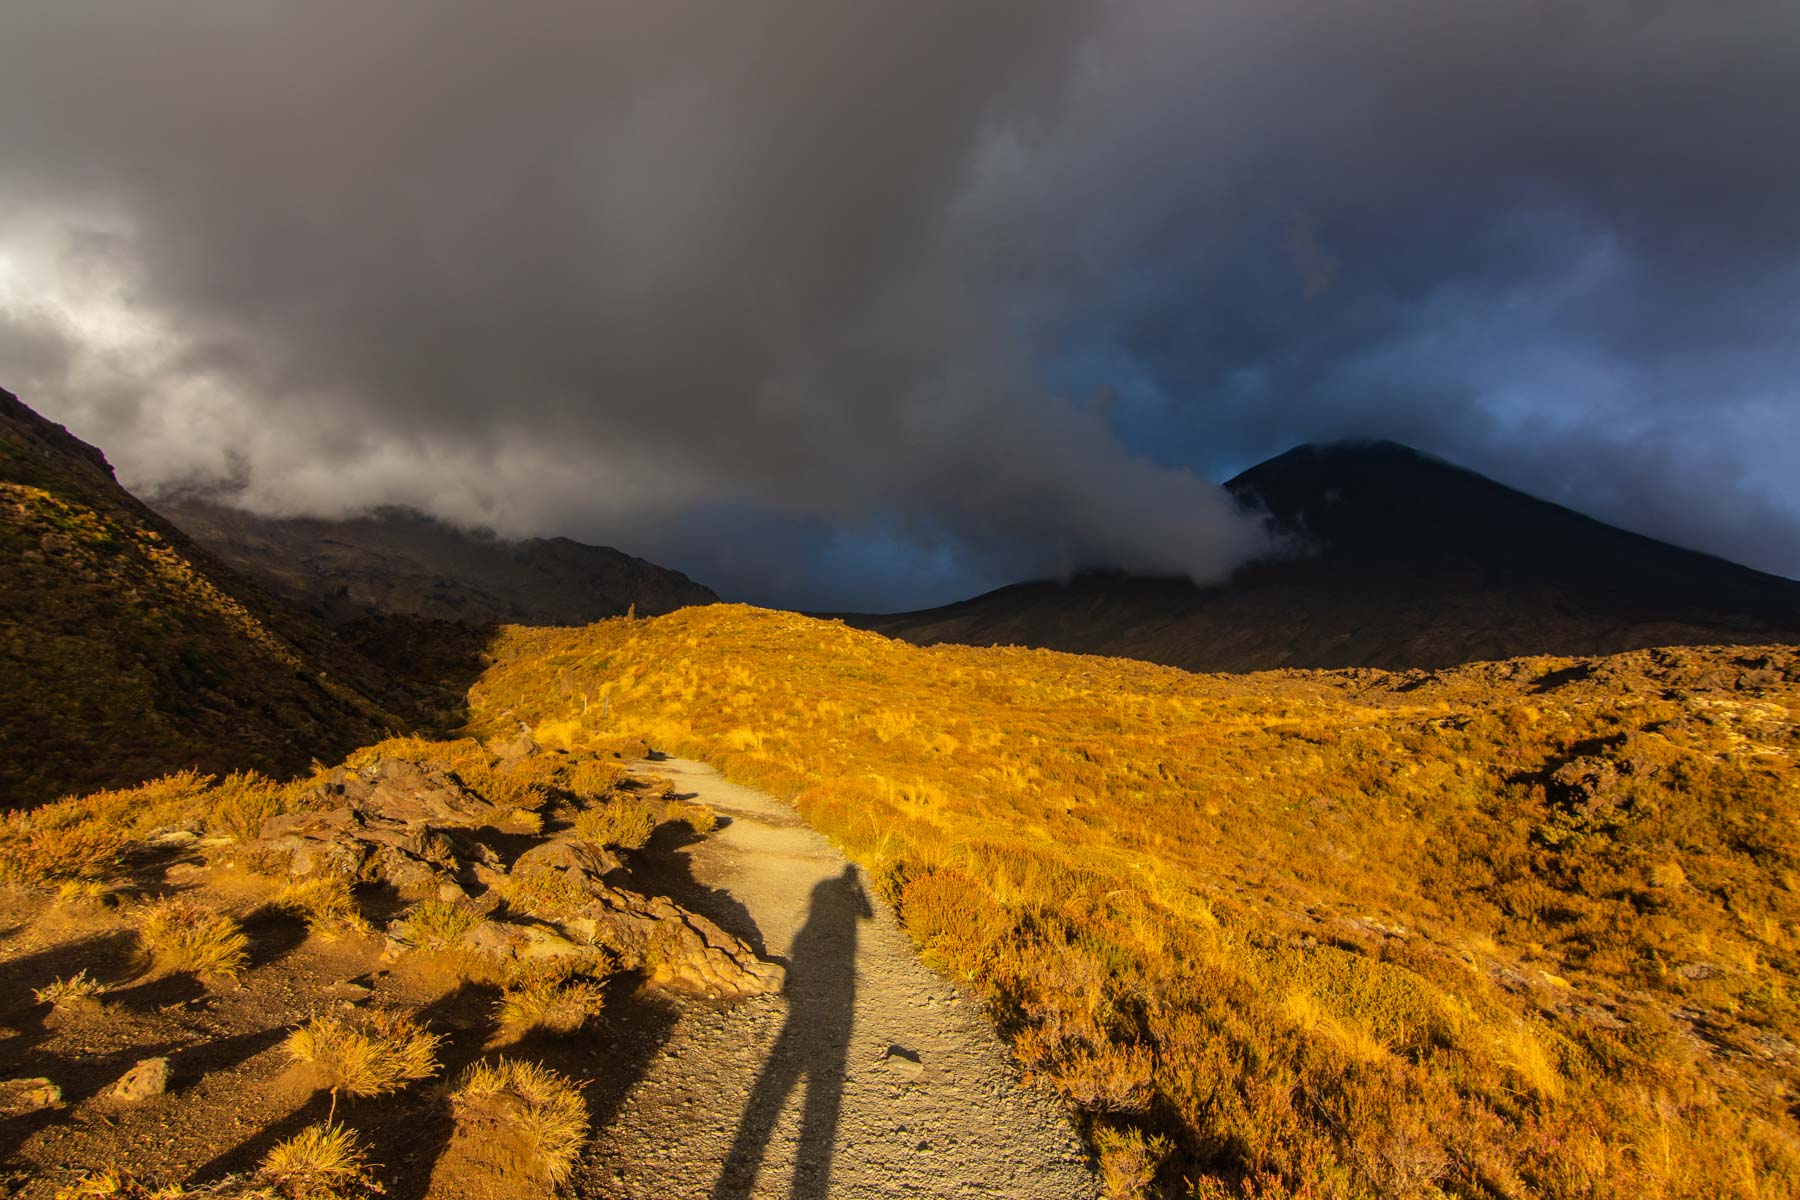 L’ombre du photographe se dessine sur le sol au coucher du soleil alors que des nuages noirs engloutissent le volcan Ngauruhoe.